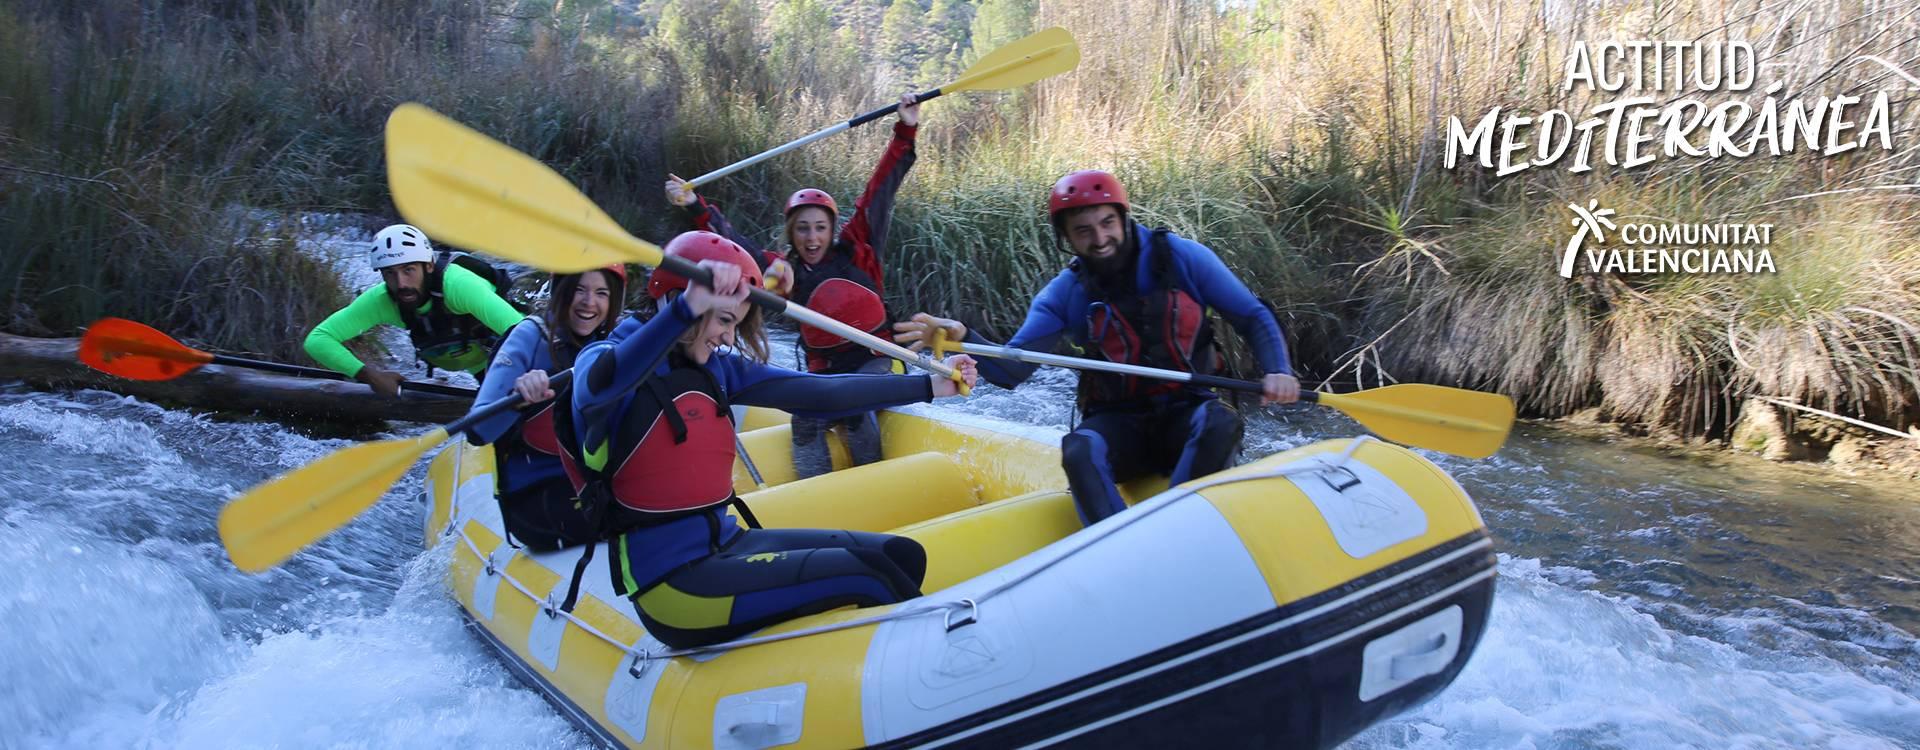 Quatre joves realitzant rafting a Venta del Moro